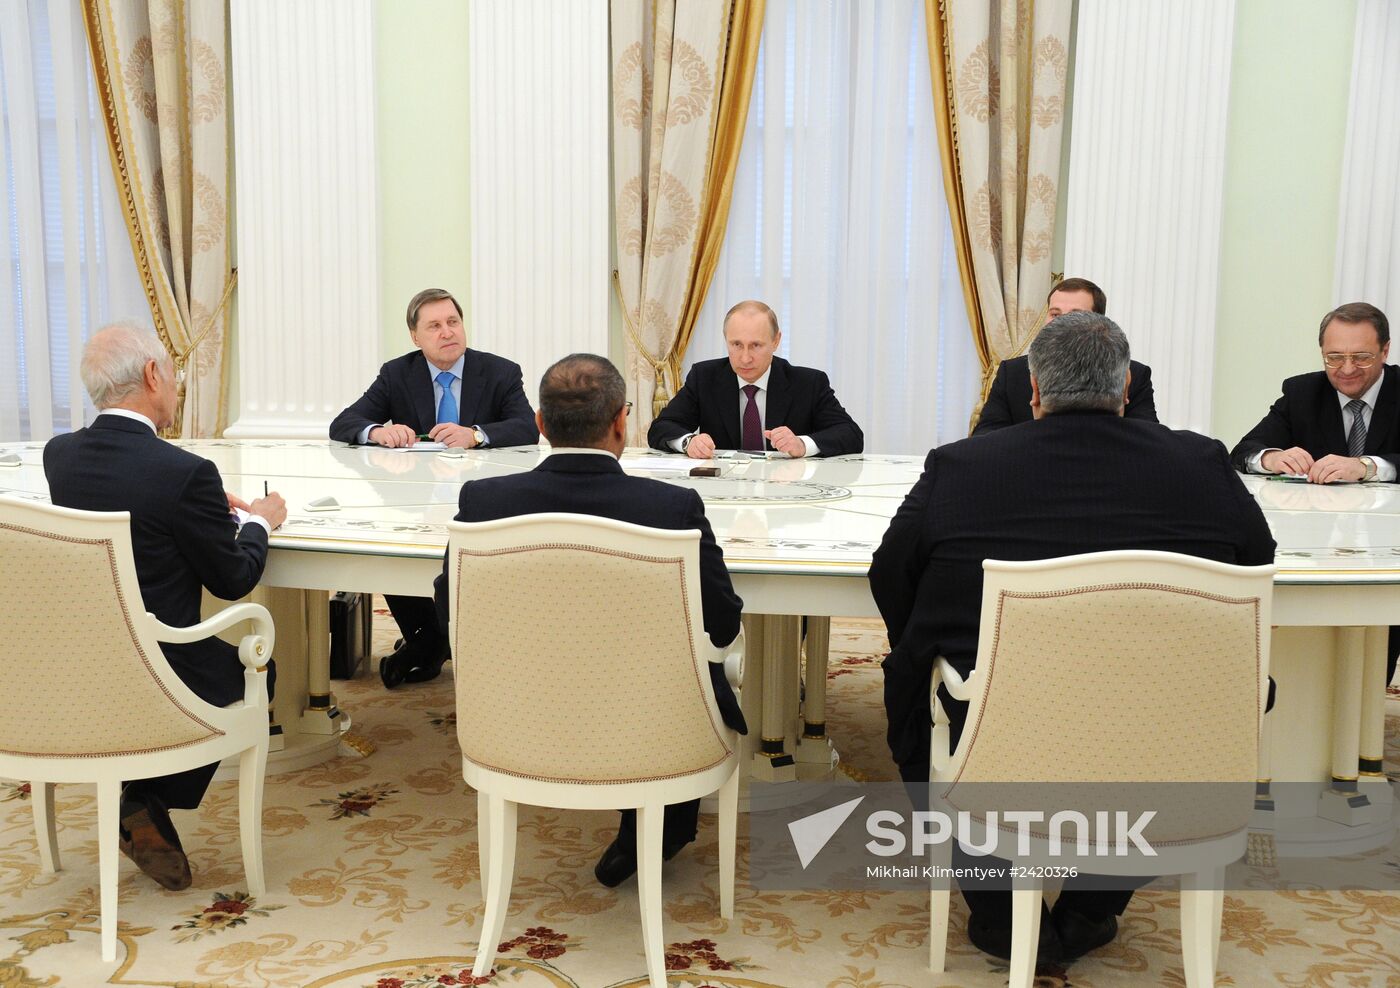 Vladimir Putin meets with Salman bin Hamad bin Isa Al Khalifa